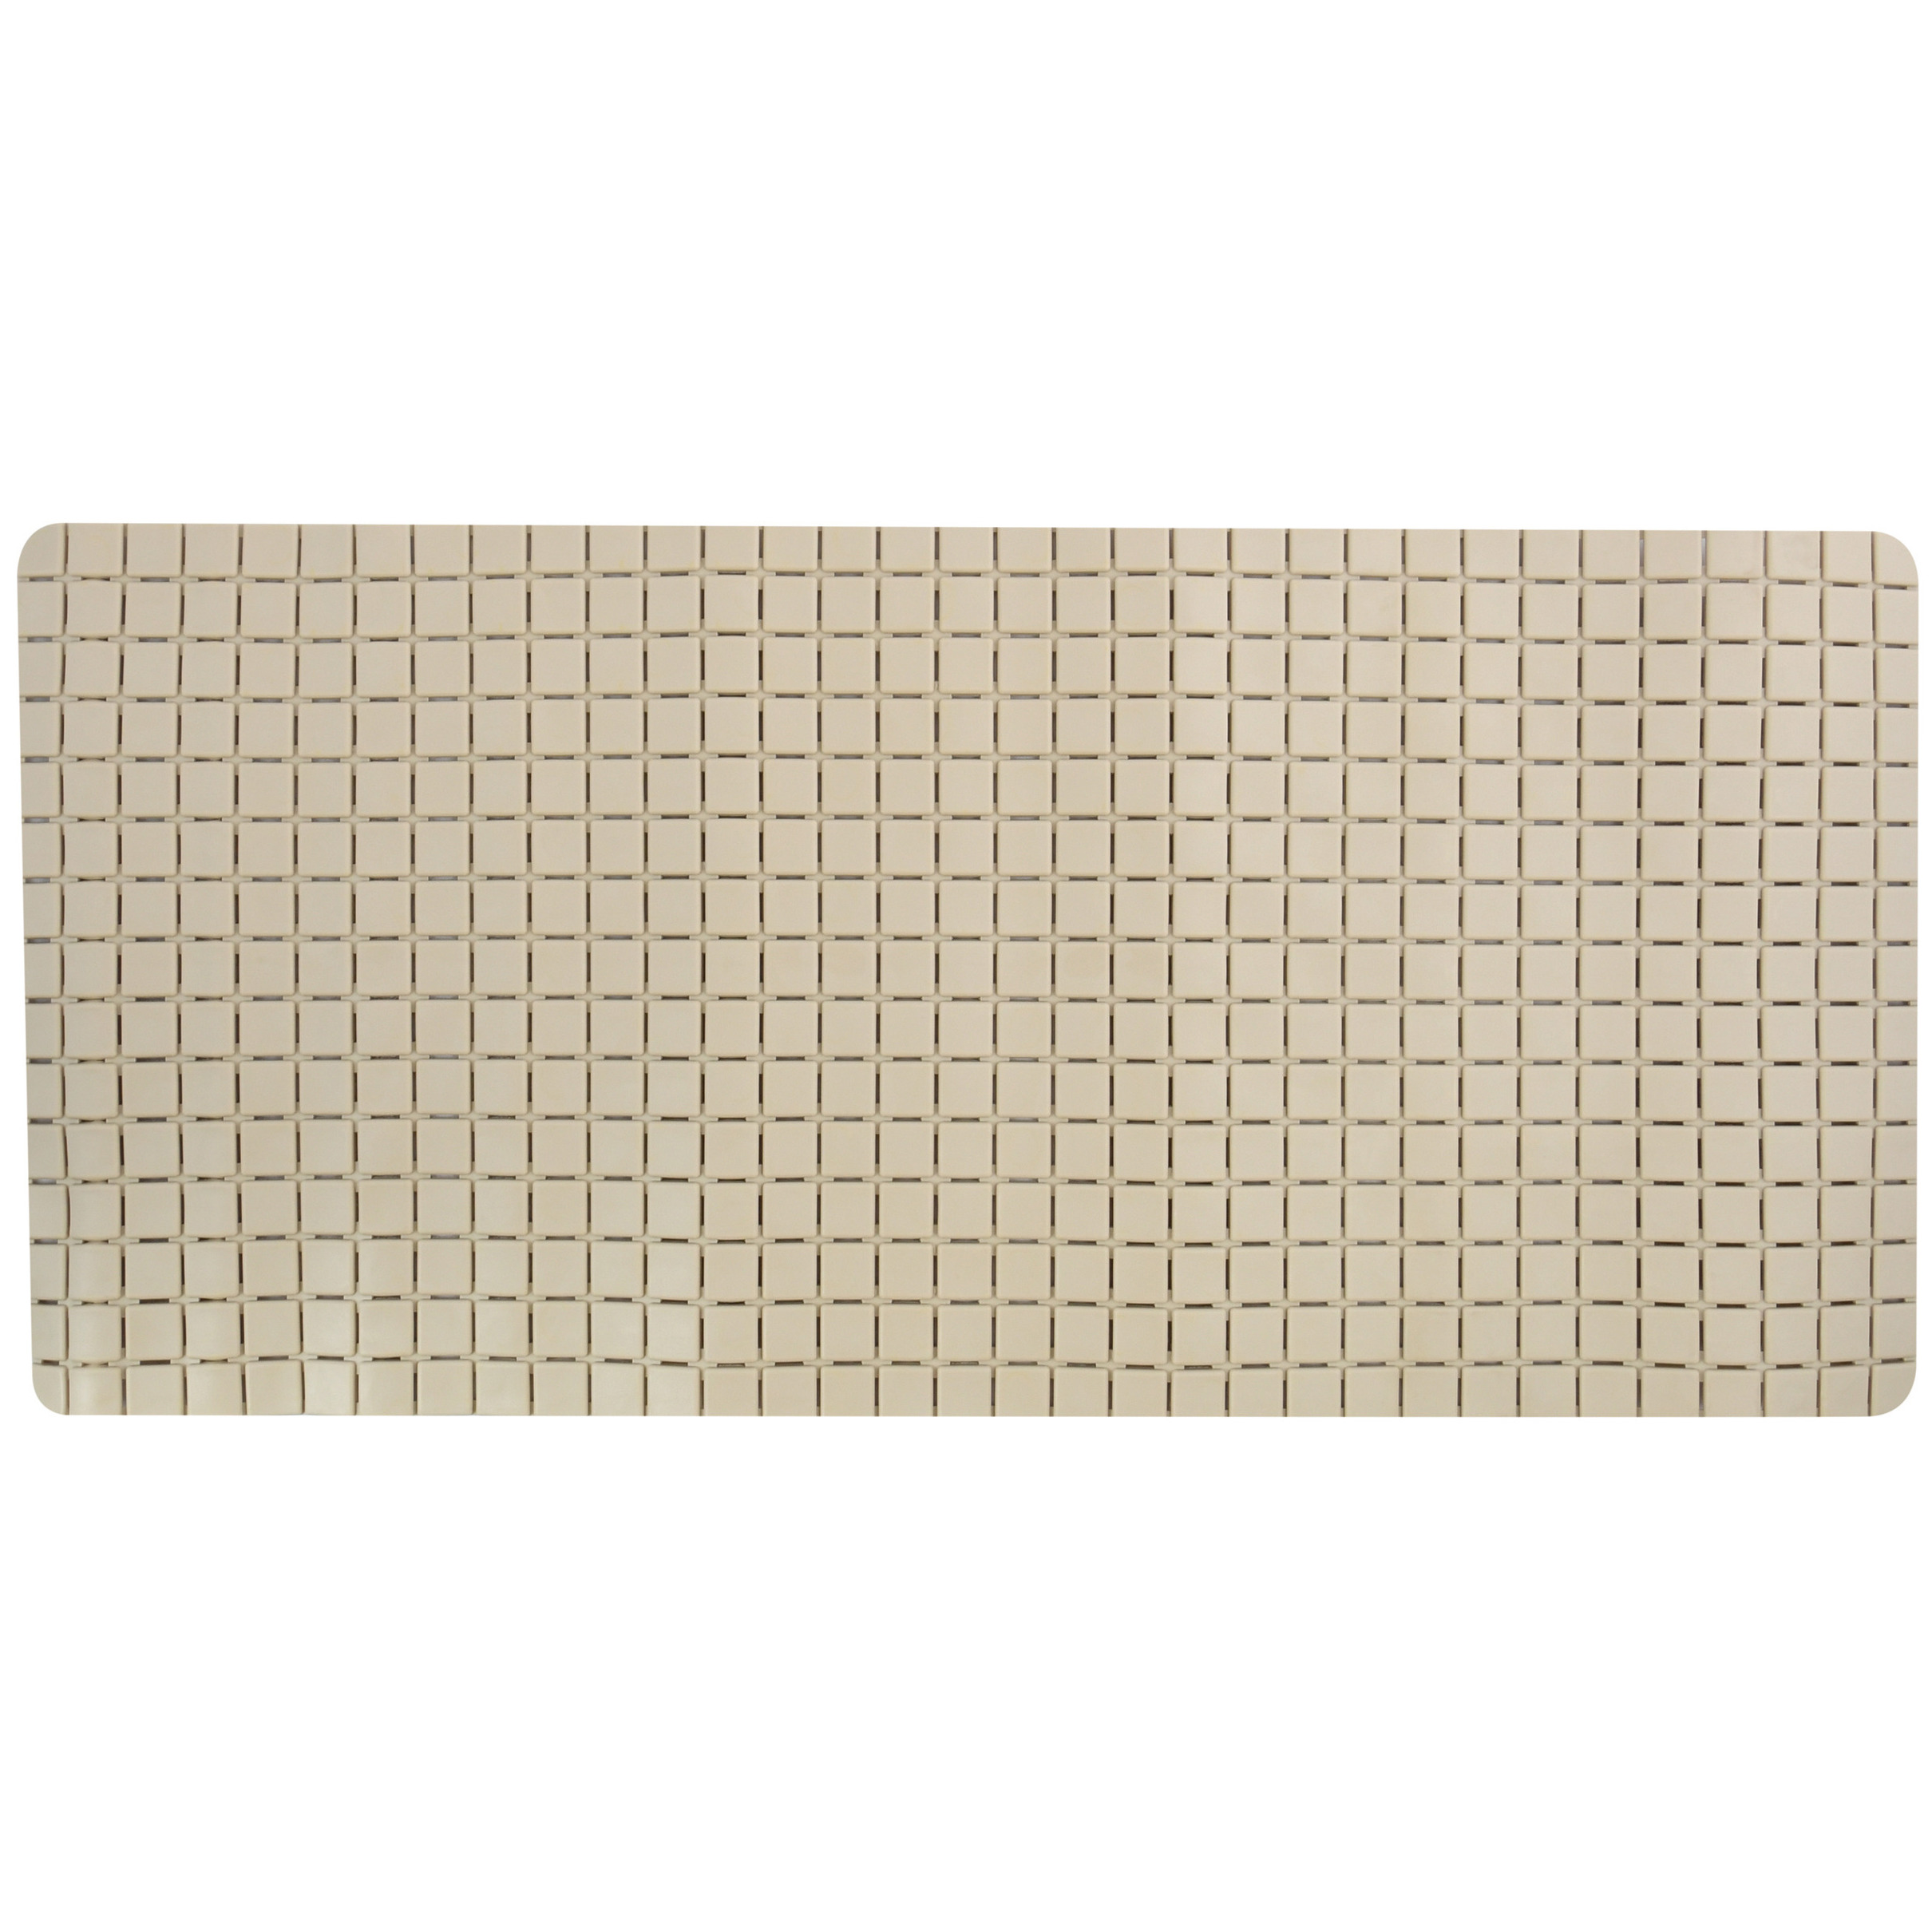 Douche-bad anti-slip mat badkamer rubber beige 76 x 36 cm rechthoek